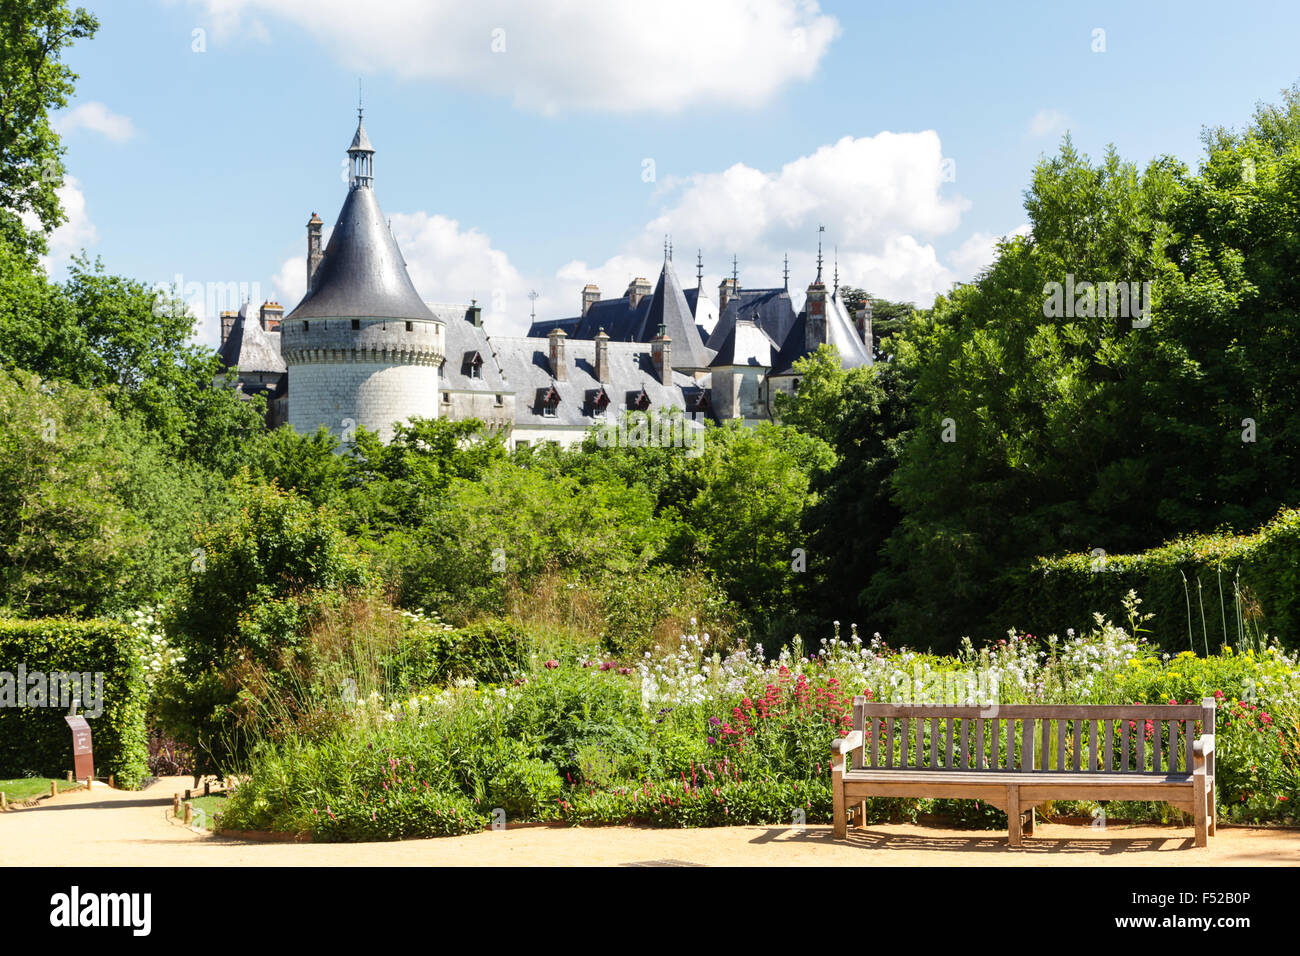 International garden festival Chateau Chaumont Sur Loire, France Stock Photo